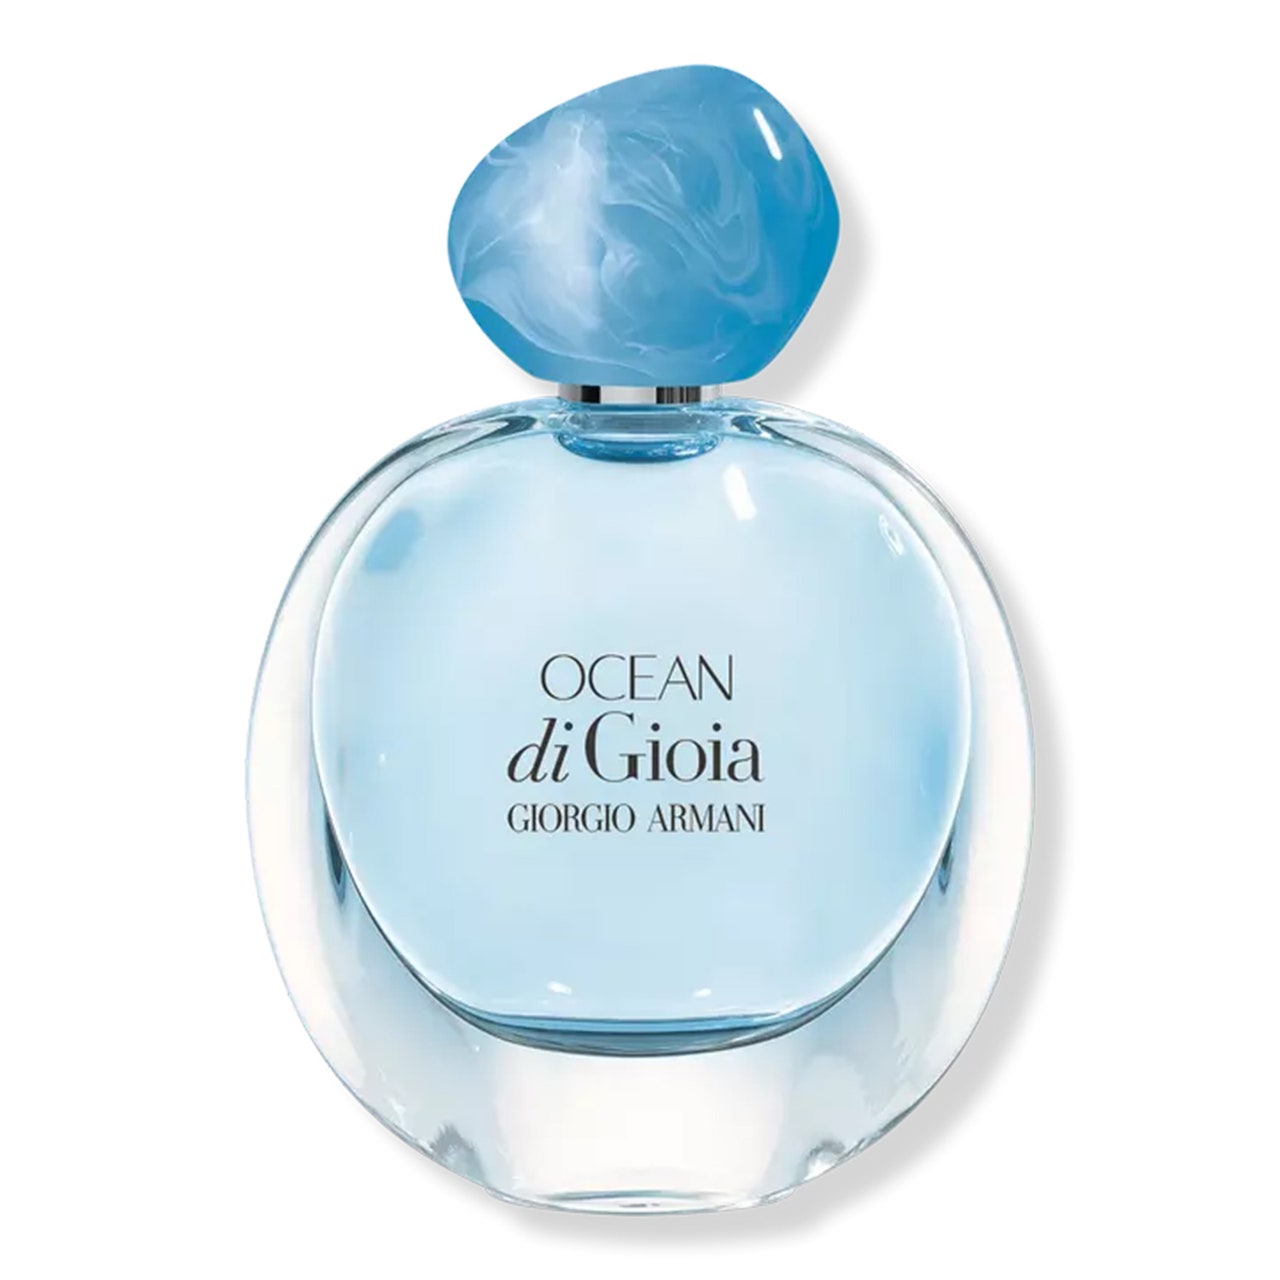 Armani Ocean di Gioia Eau de Parfum runde Flasche hellblaues Parfüm mit blauer Steinkappe auf weißem Hintergrund